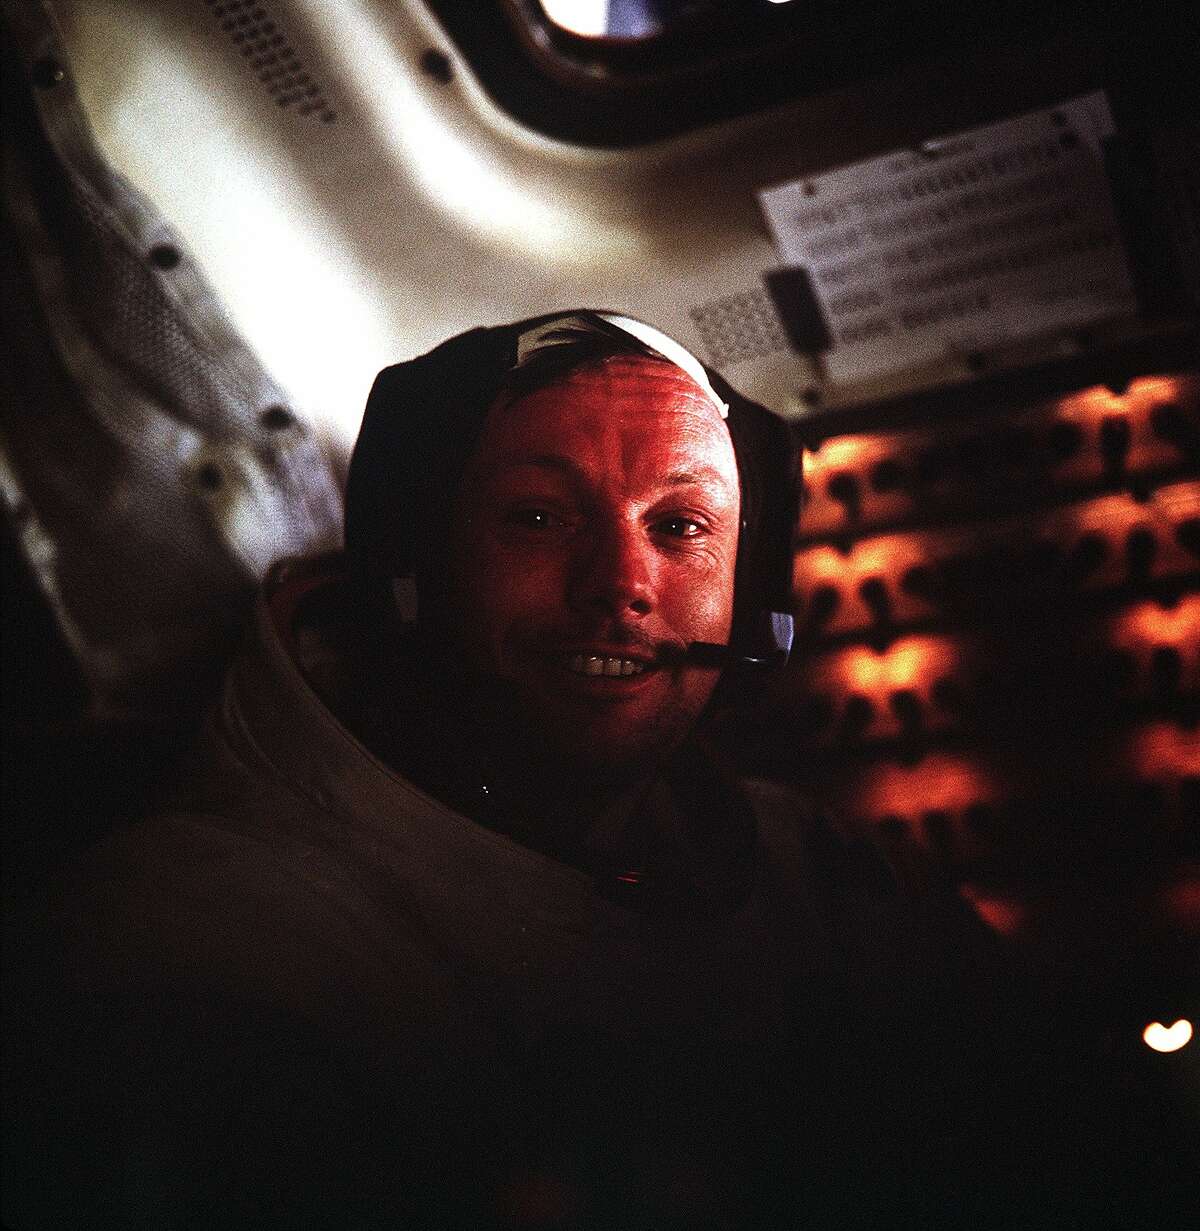 (1969年7月20日)——这张照片是阿波罗11号指挥官宇航员尼尔·a·阿姆斯特朗在登月舱(登月舱)内拍摄的，当时登月舱停在月球表面。拍摄这张照片时，宇航员阿姆斯特朗和登月舱飞行员小埃德温·e·奥尔德林已经完成了他们历史性的舱外活动(EVA)。当阿姆斯特朗和奥尔德林探索月球表面时，指令舱飞行员、宇航员迈克尔·柯林斯(Michael Collins)留在了月球轨道上的指令和服务舱(CSM)。